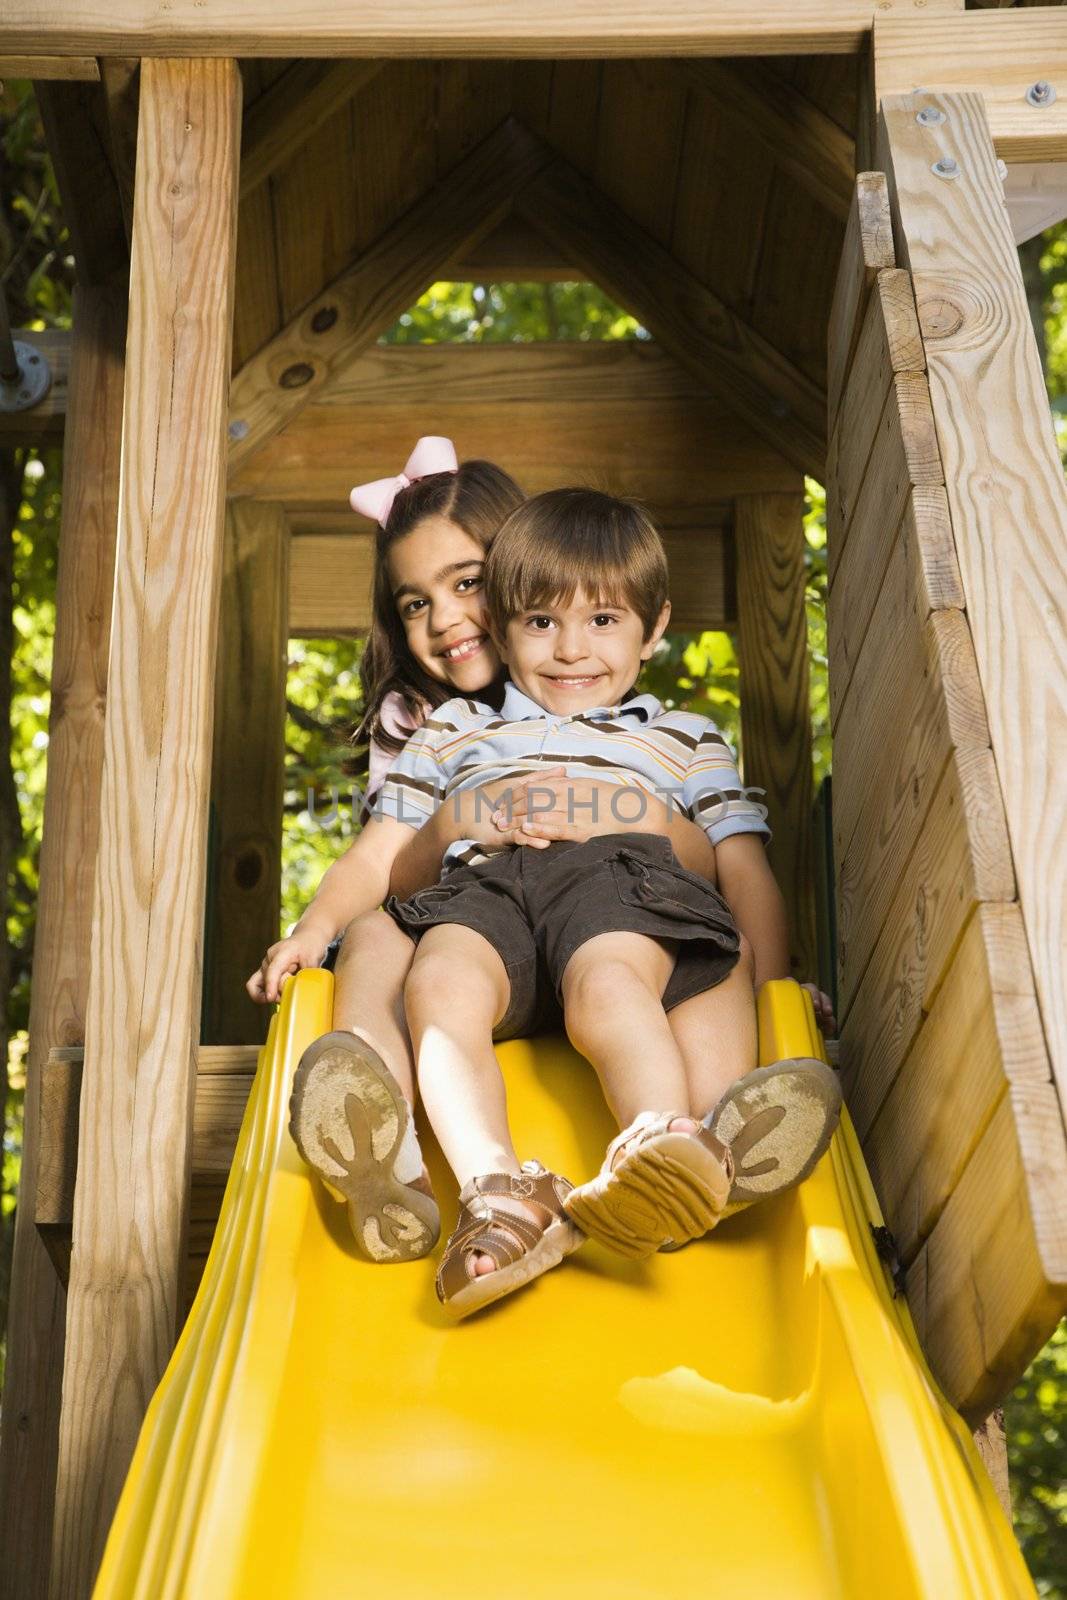 Kids on slide. by iofoto